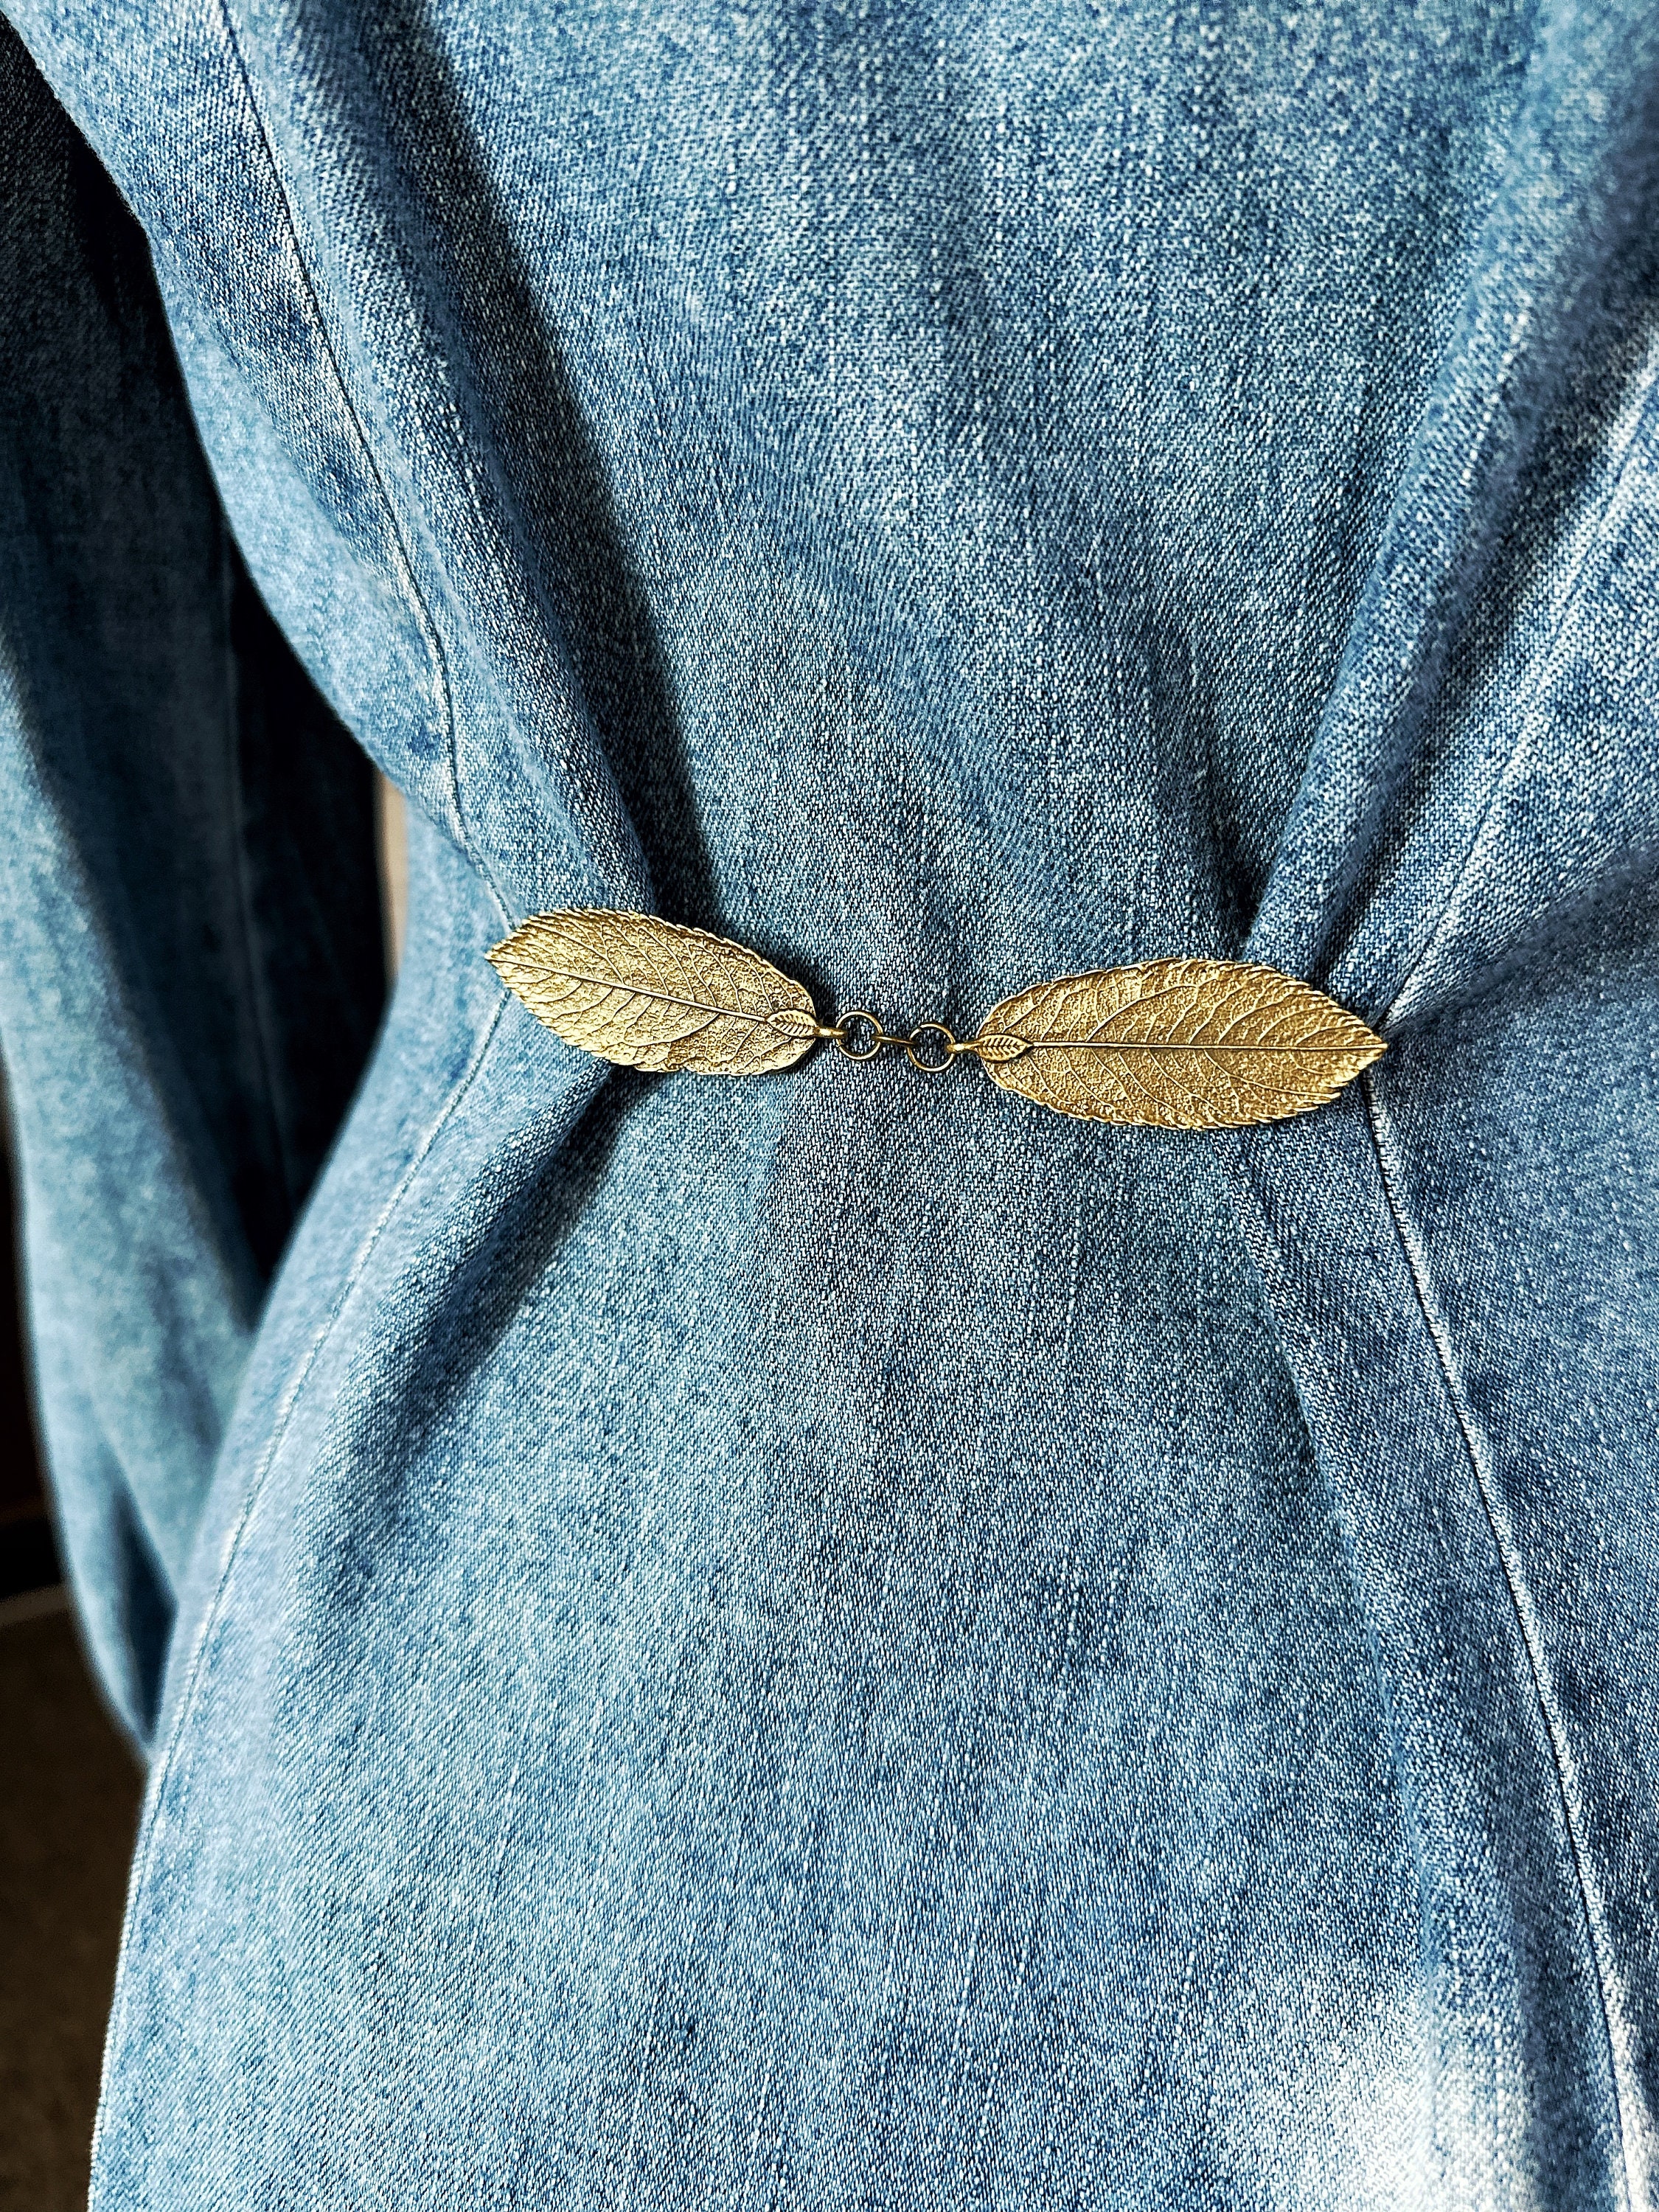 NEW Bronze Leaf Cloak Clasp willow Renaissance Fair Outfit Cape